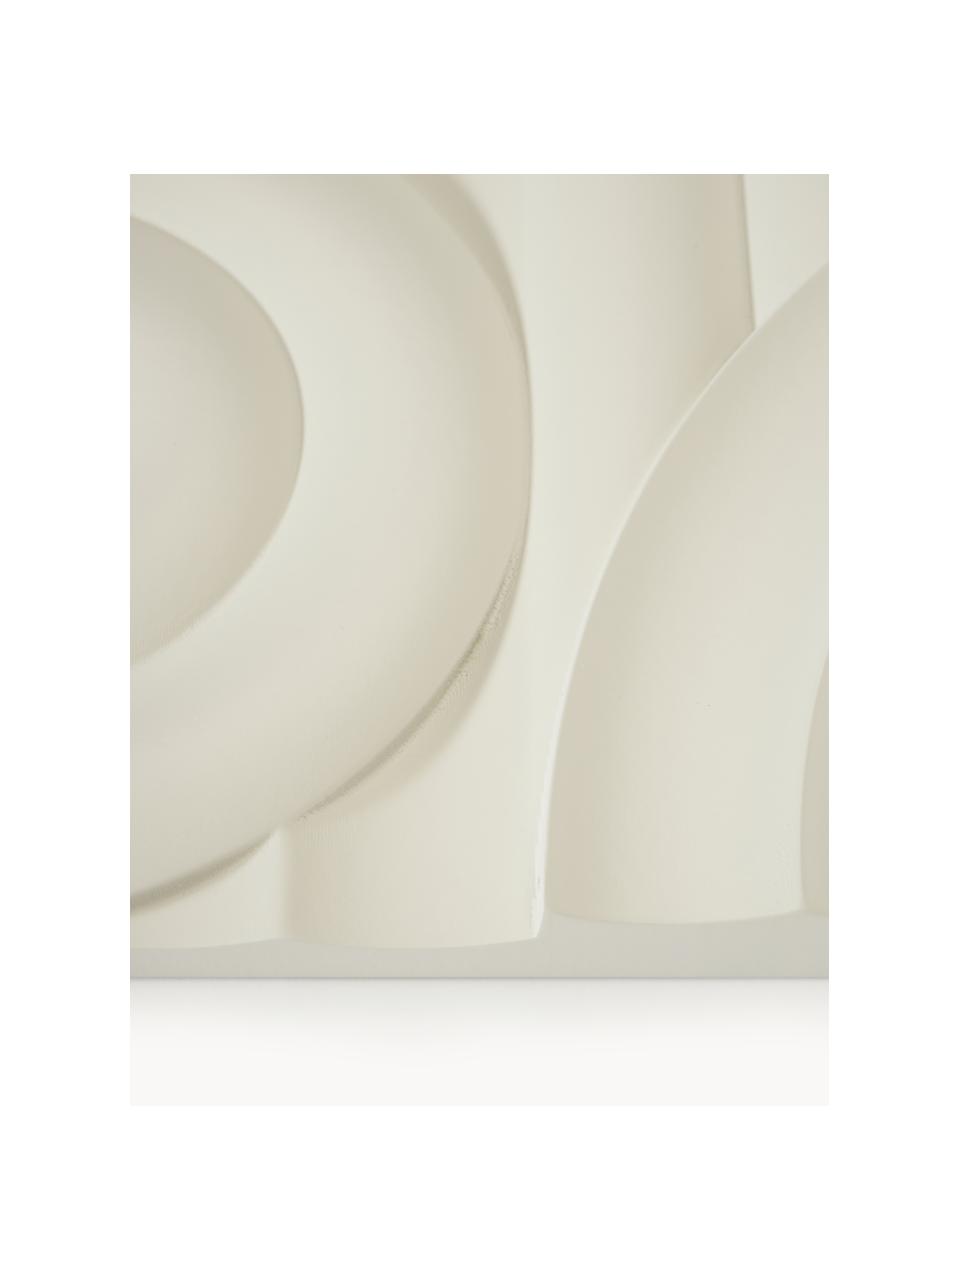 Wandobject Massimo, Vezelplaat met gemiddelde dichtheid (MDF), Lichtbeige, Ø 72 x D 2 cm